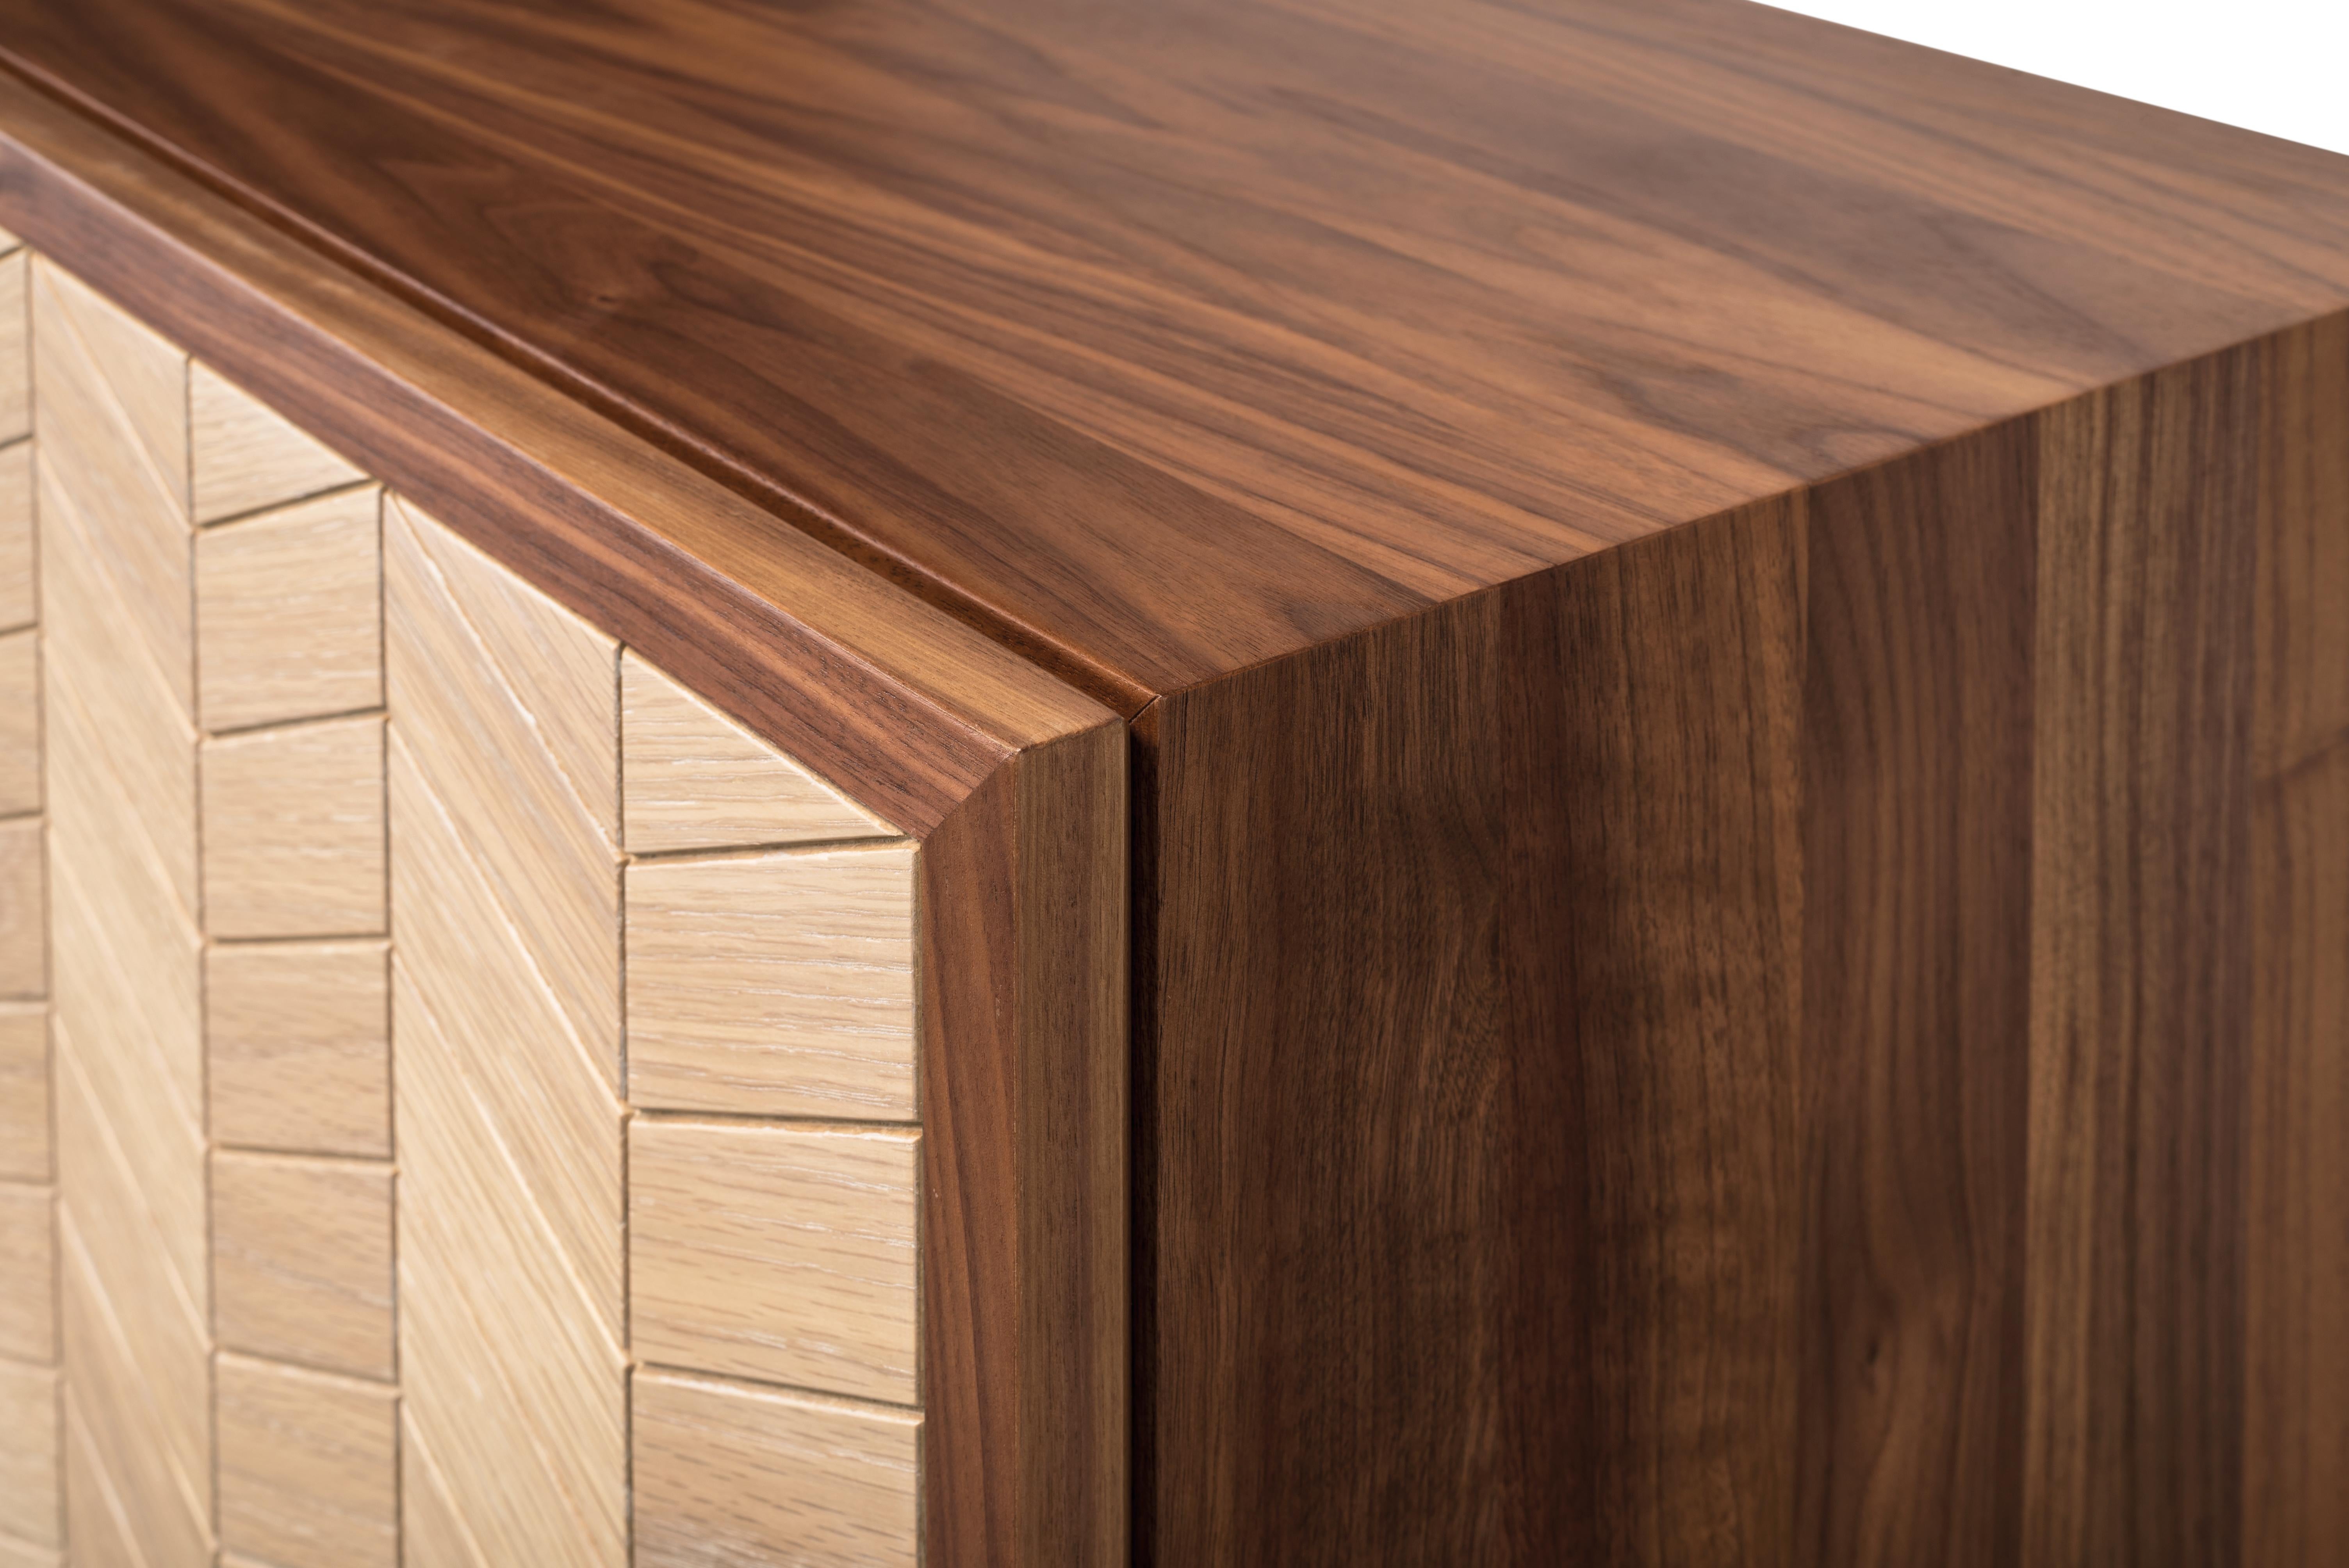 Scandinavian Modern Walnut and Oak Changeable Cabinet, Desk, Sideboard or Bar For Sale